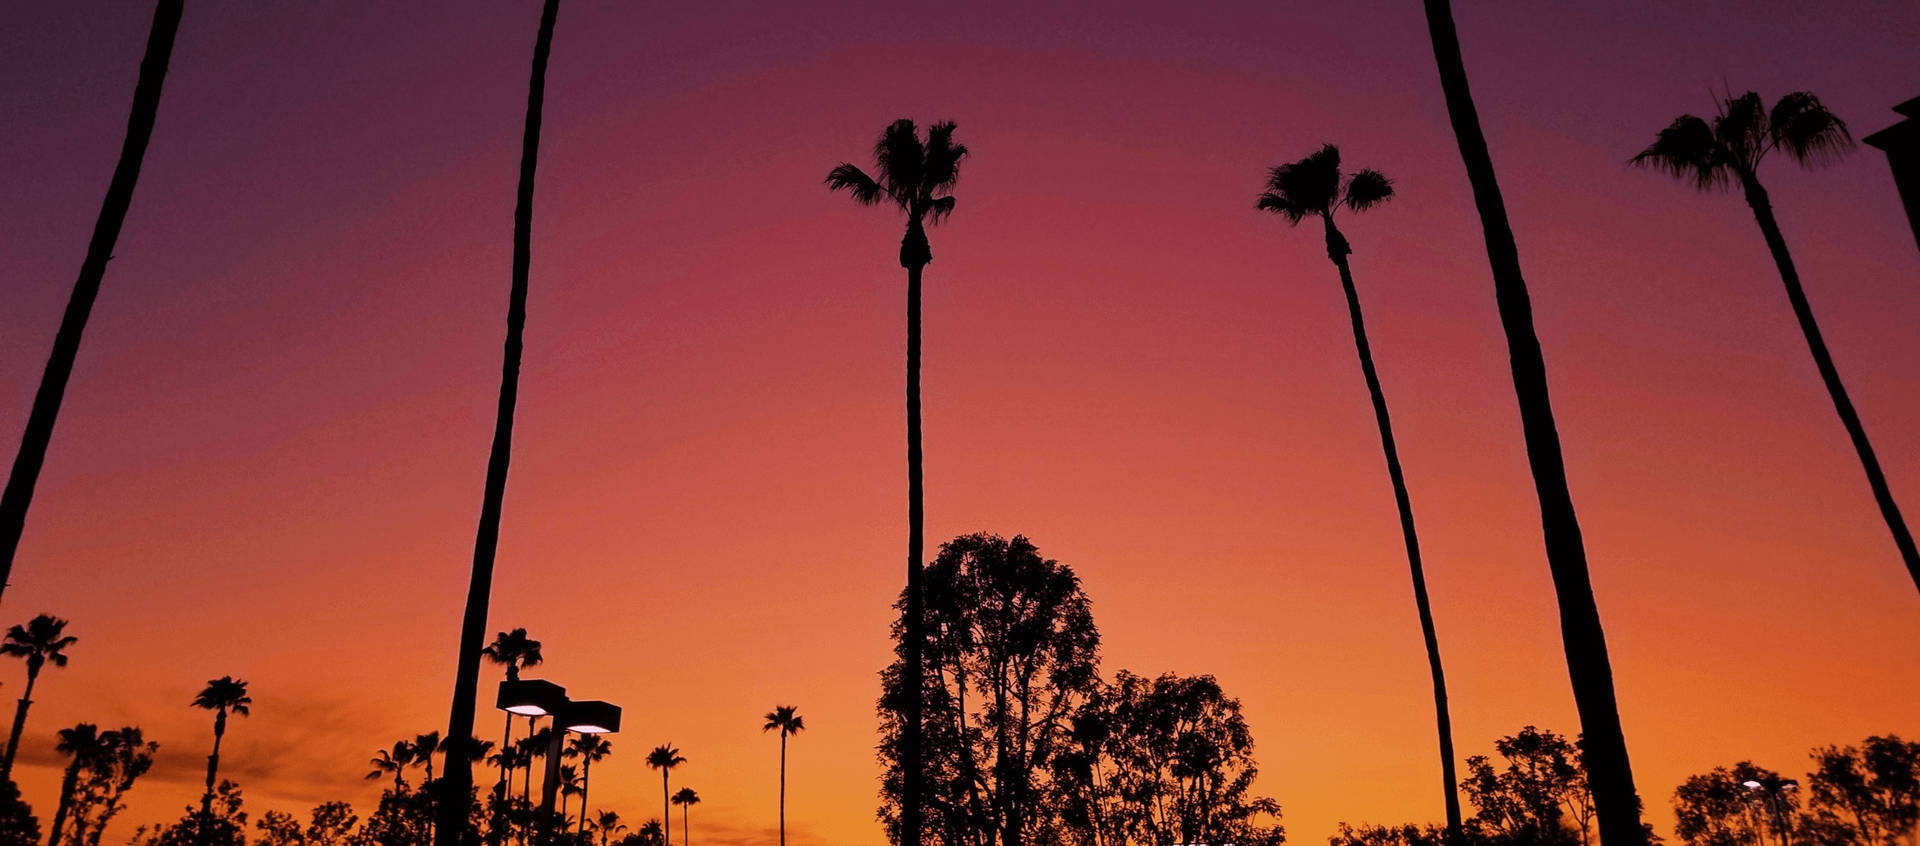 Pôrdo Sol De Los Angeles Sobre Árvores. Papel de Parede